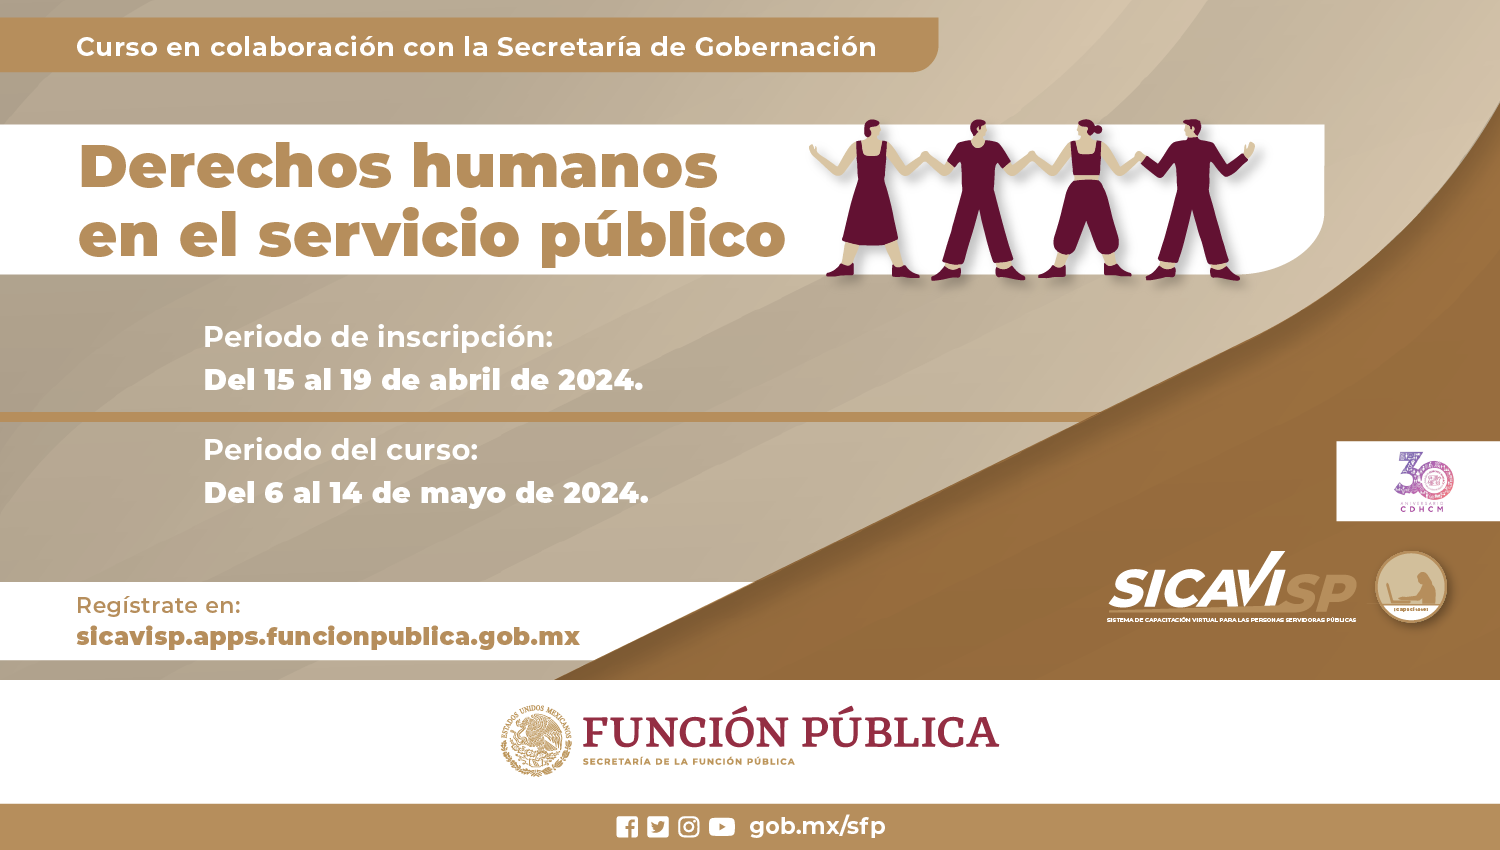 Carrusel - Enfoque de derechos humanos en el servicio
público